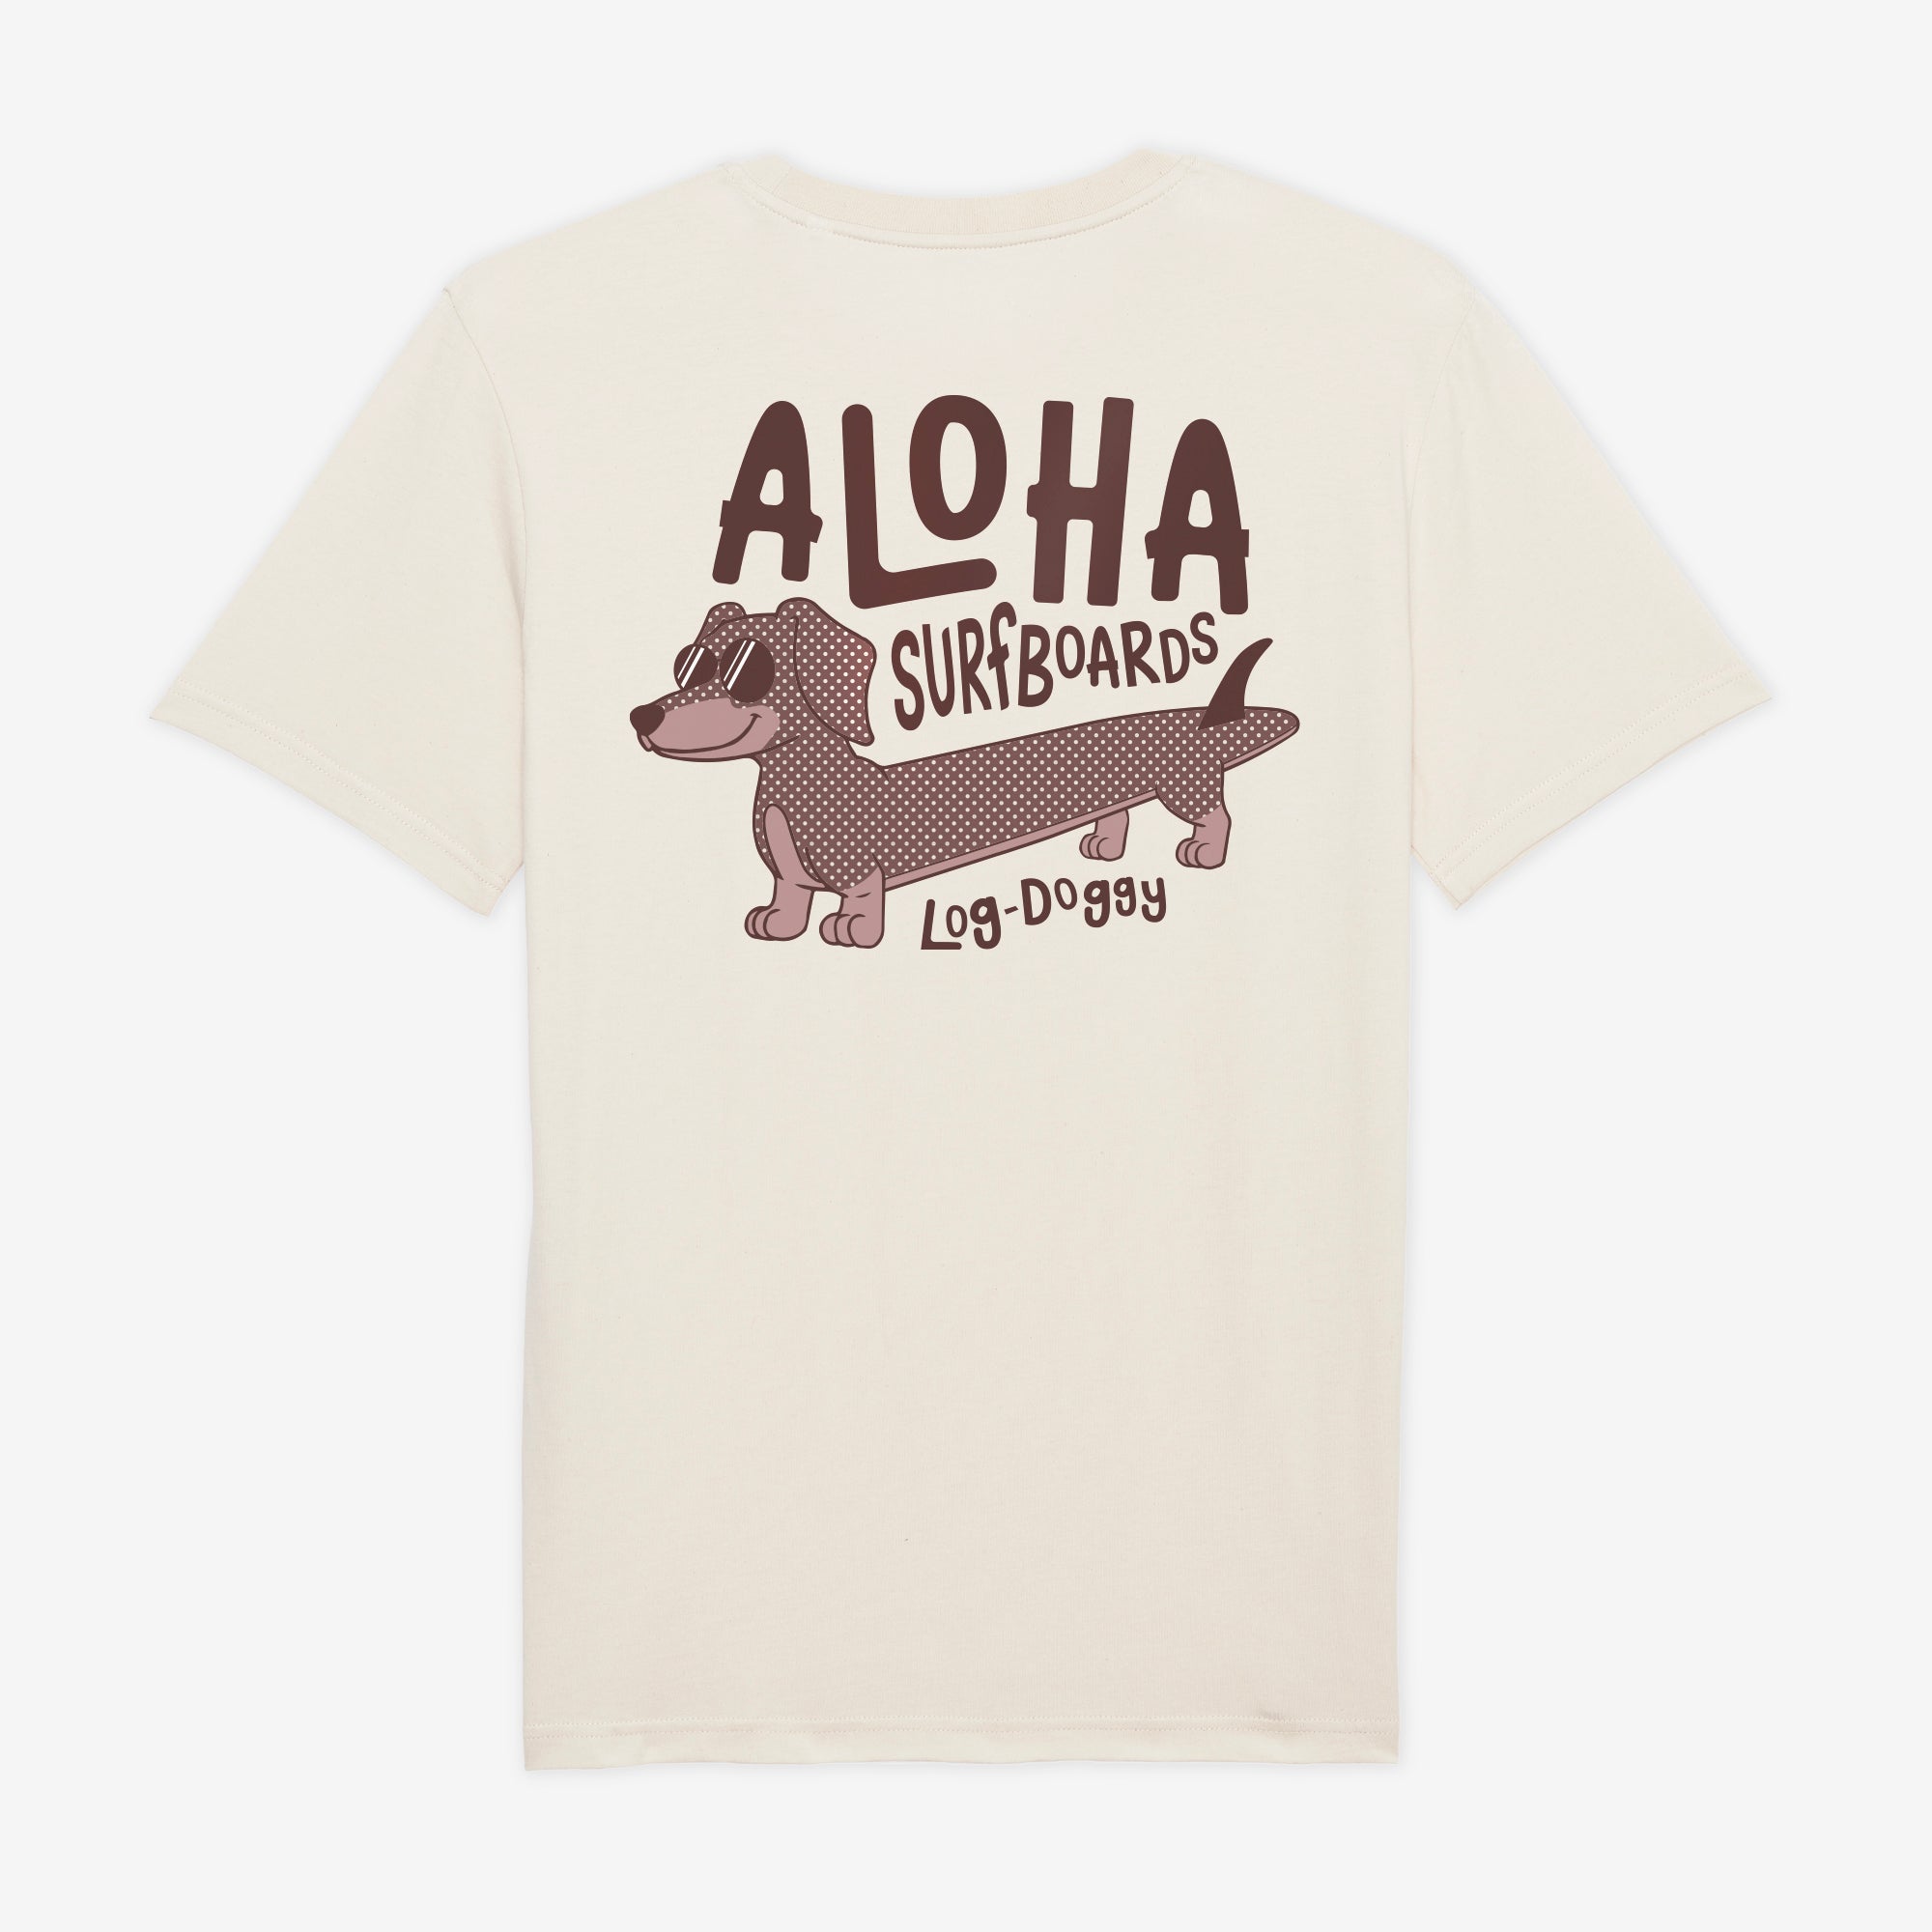 Aloha Log Doggy T-Shirt – Unisex Short Sleeve Tee - Natural Stone - ManGo Surfing